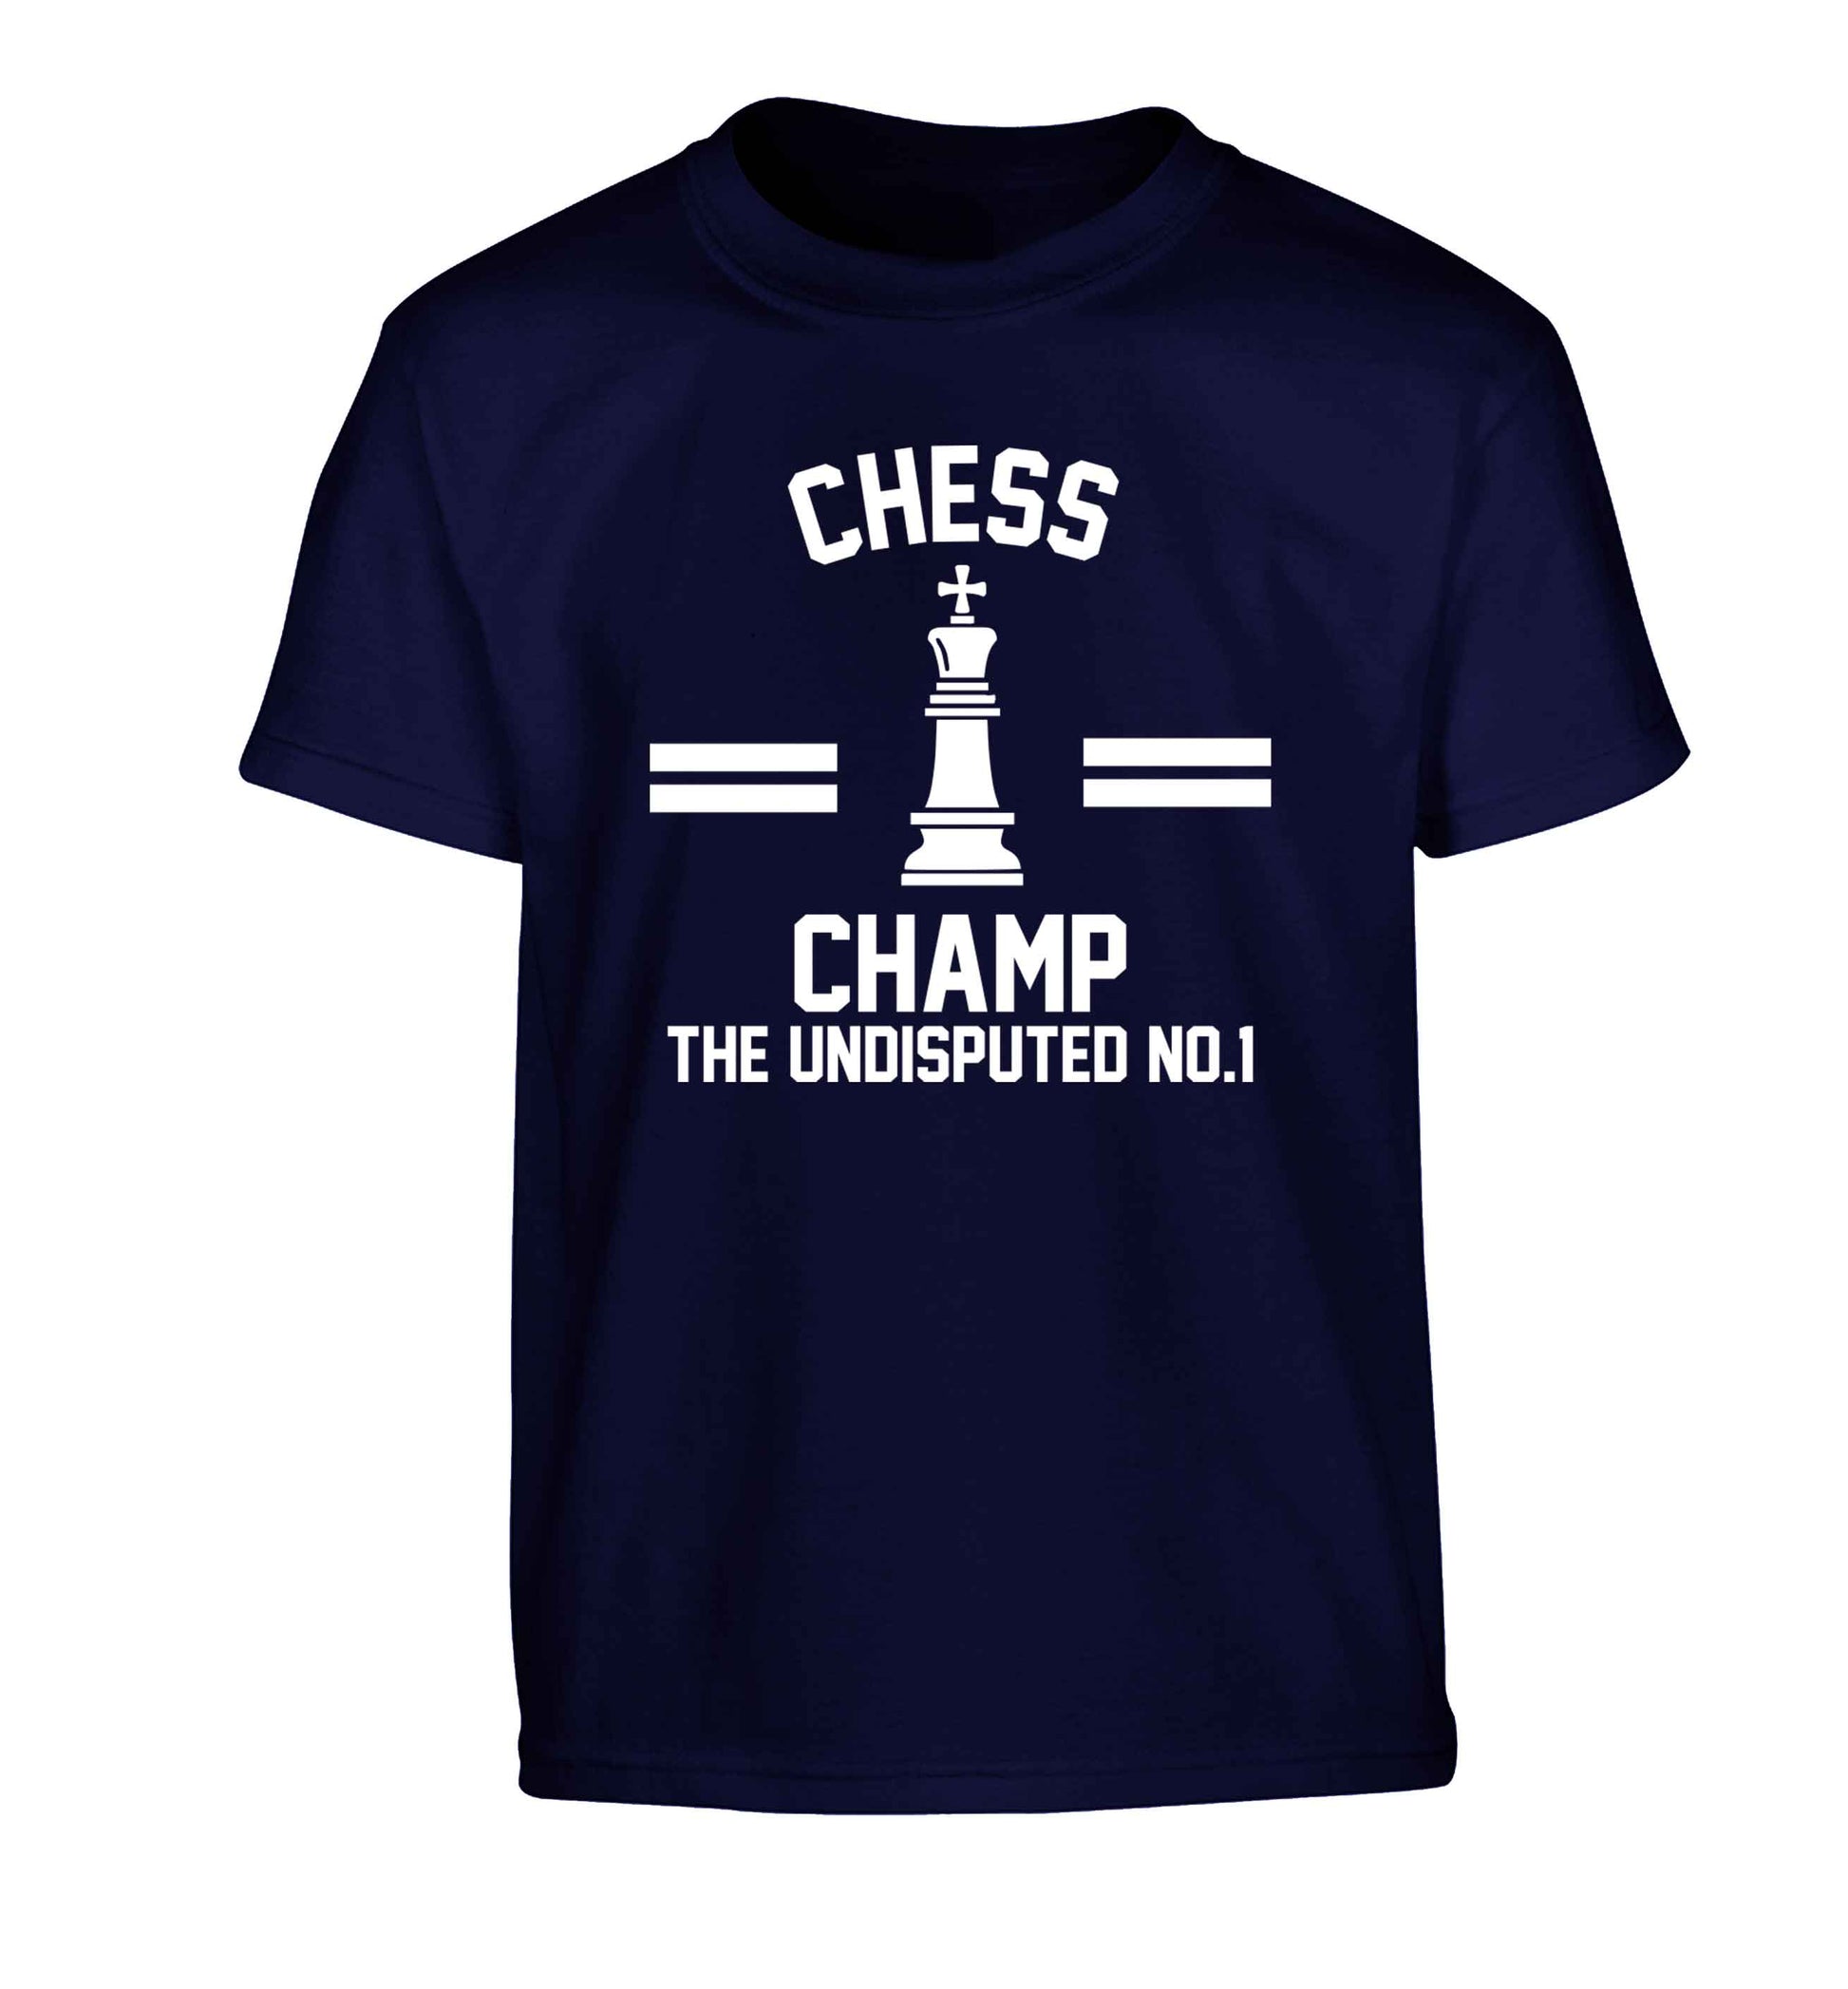 Undisputed chess championship no.1  Children's navy Tshirt 12-13 Years